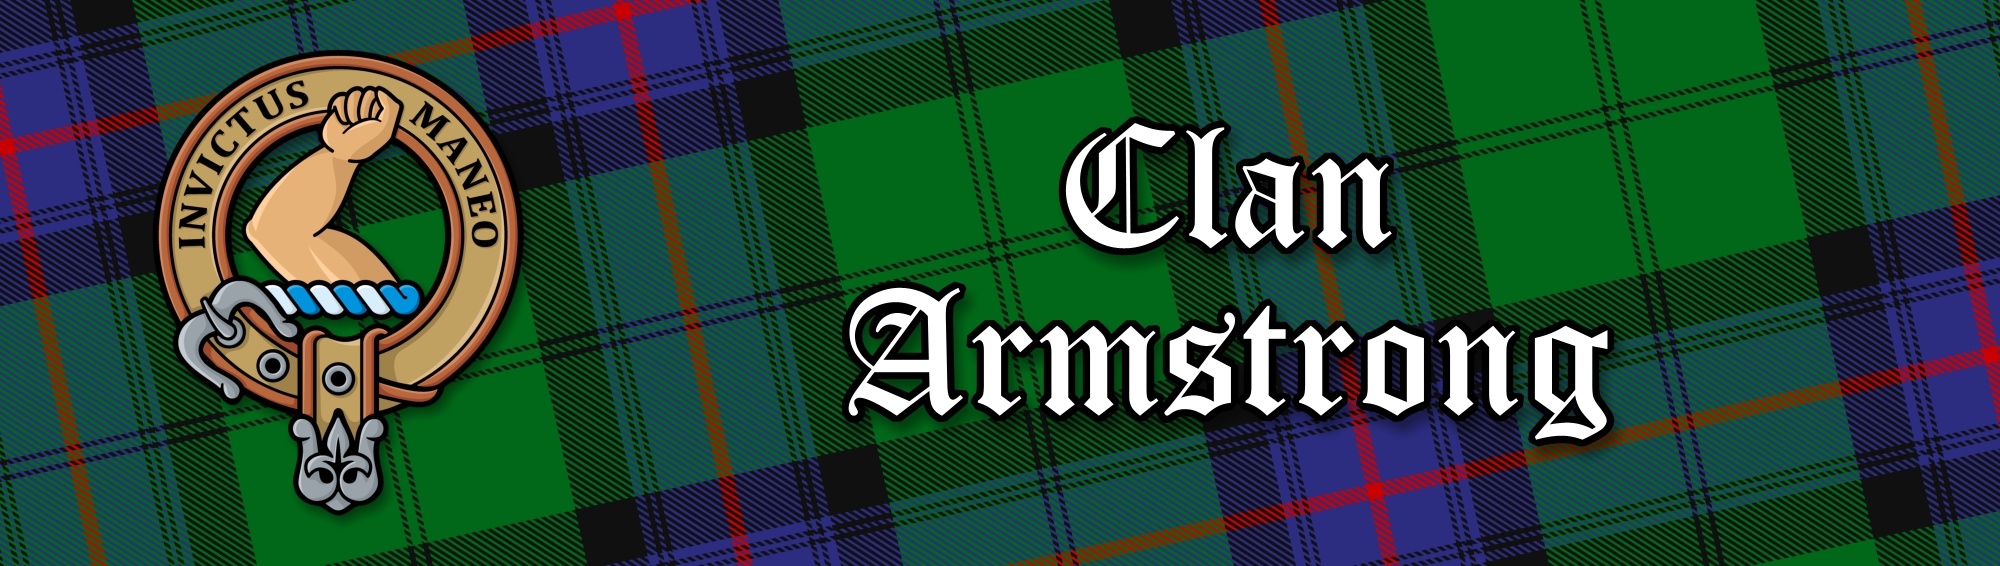 Clan Armstrong Tartan Collection